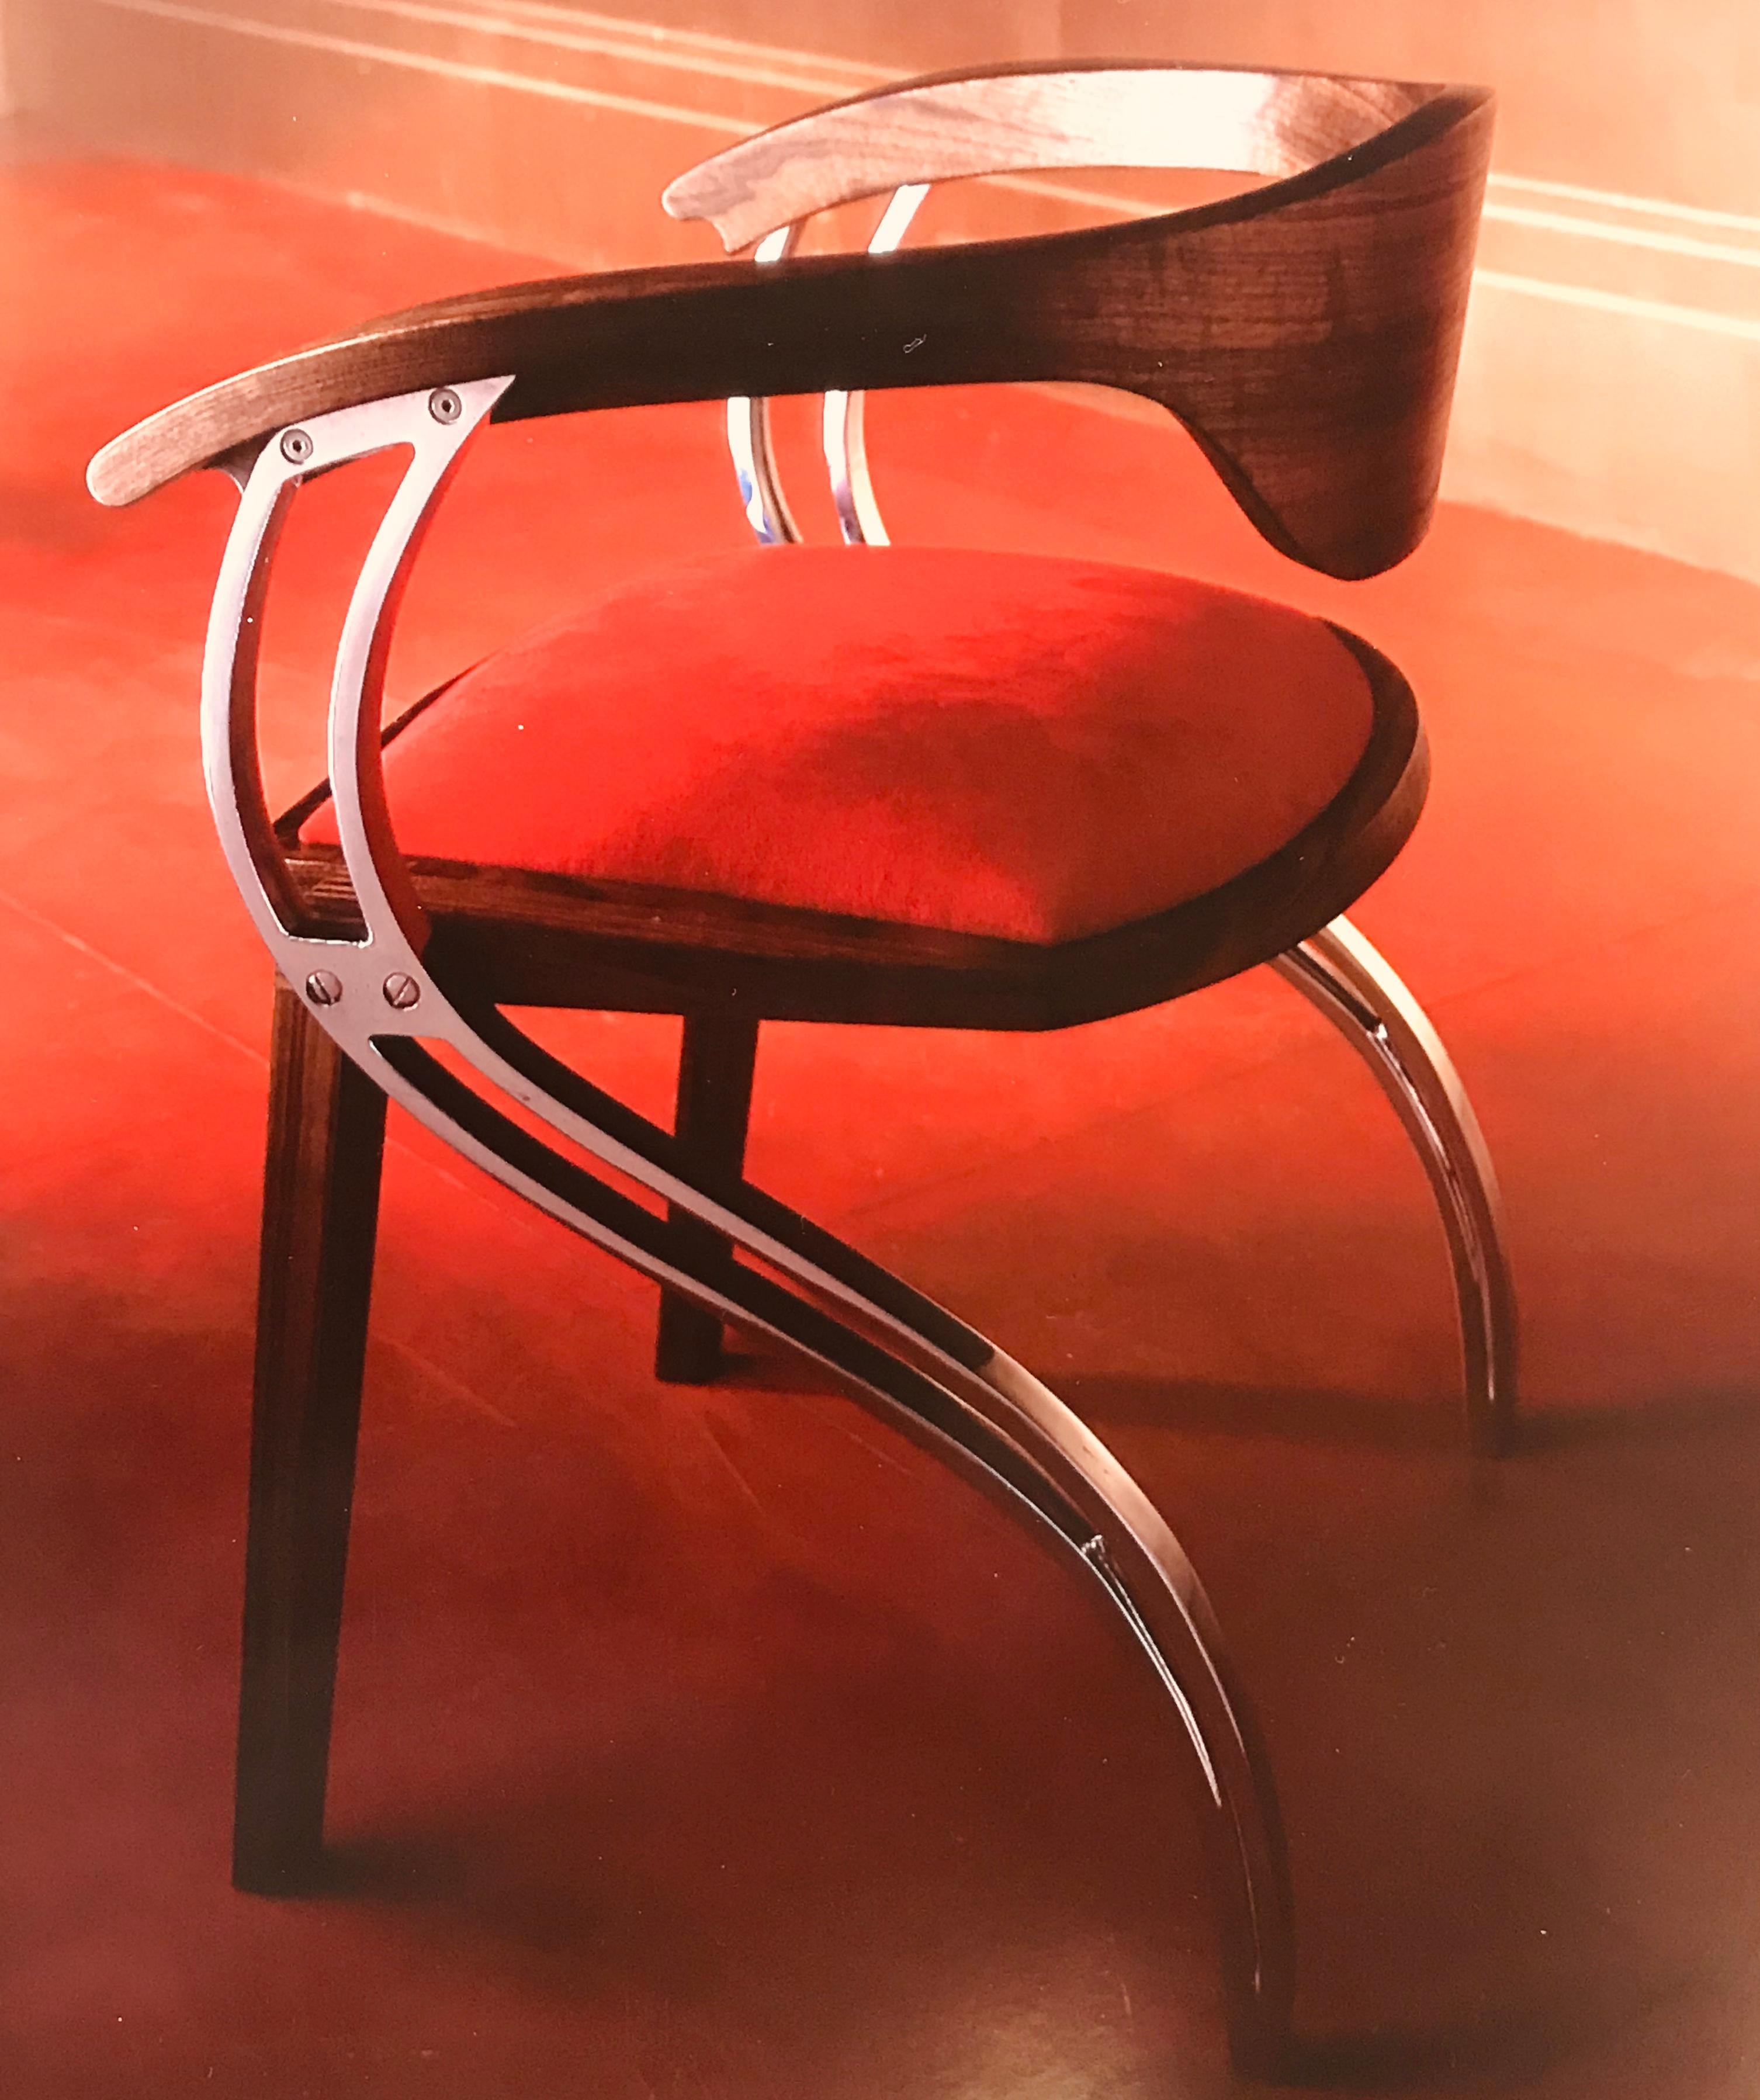 Cette chaise contemporaine sur mesure, élégante et gracieuse, joue sur la forme et la fonction. Les pieds en aluminium en forme de S créent des supports latéraux qui accueillent la structure de l'assise et le dossier incurvé 